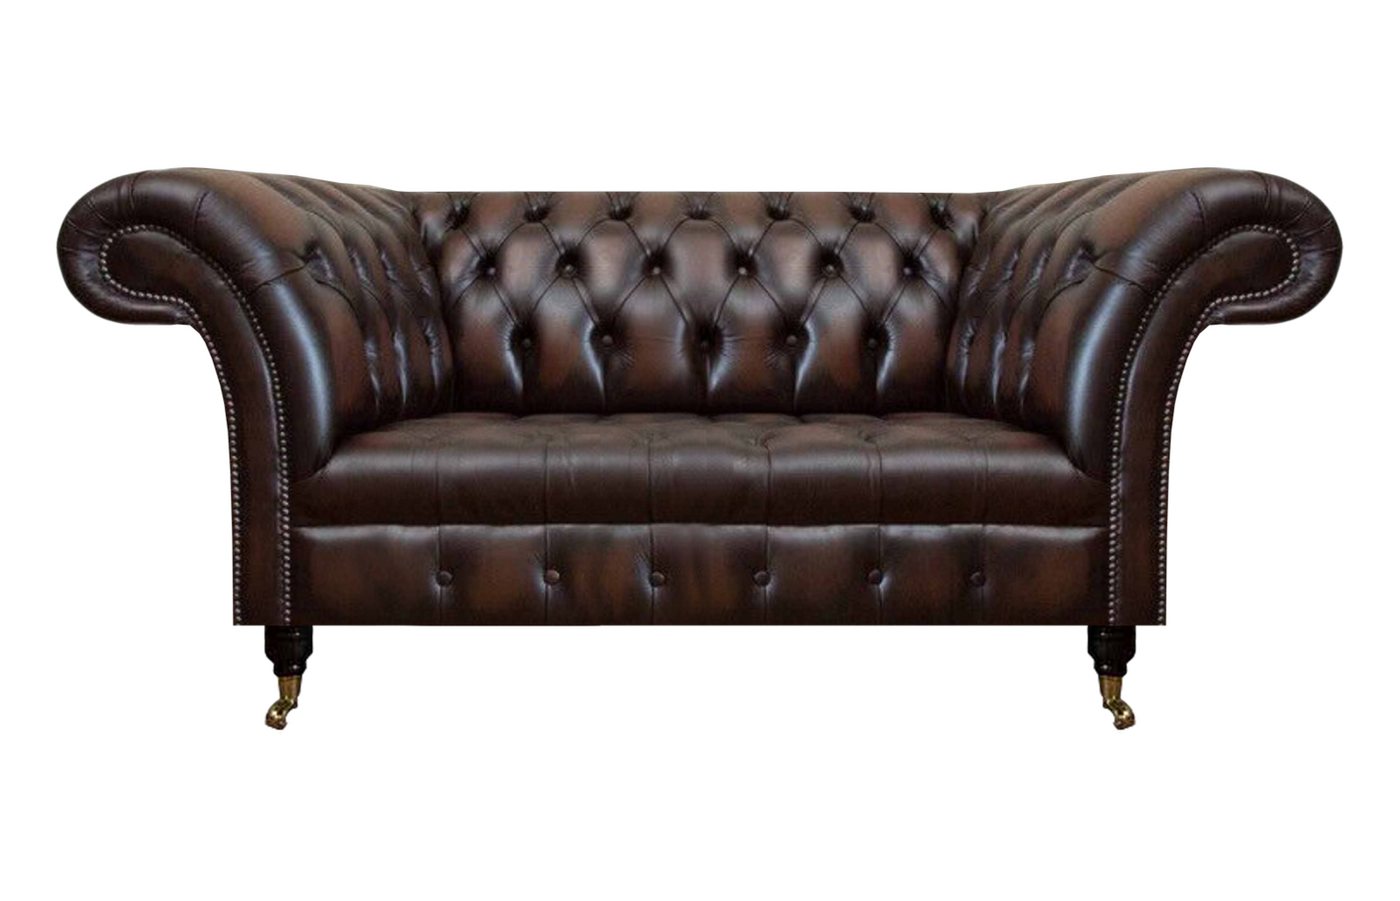 JVmoebel 2-Sitzer Braun Luxus Leder Sofa Zweisitzer Couch Wohnzimmer Polstermöbel, 1 Teile, Made in Europa von JVmoebel